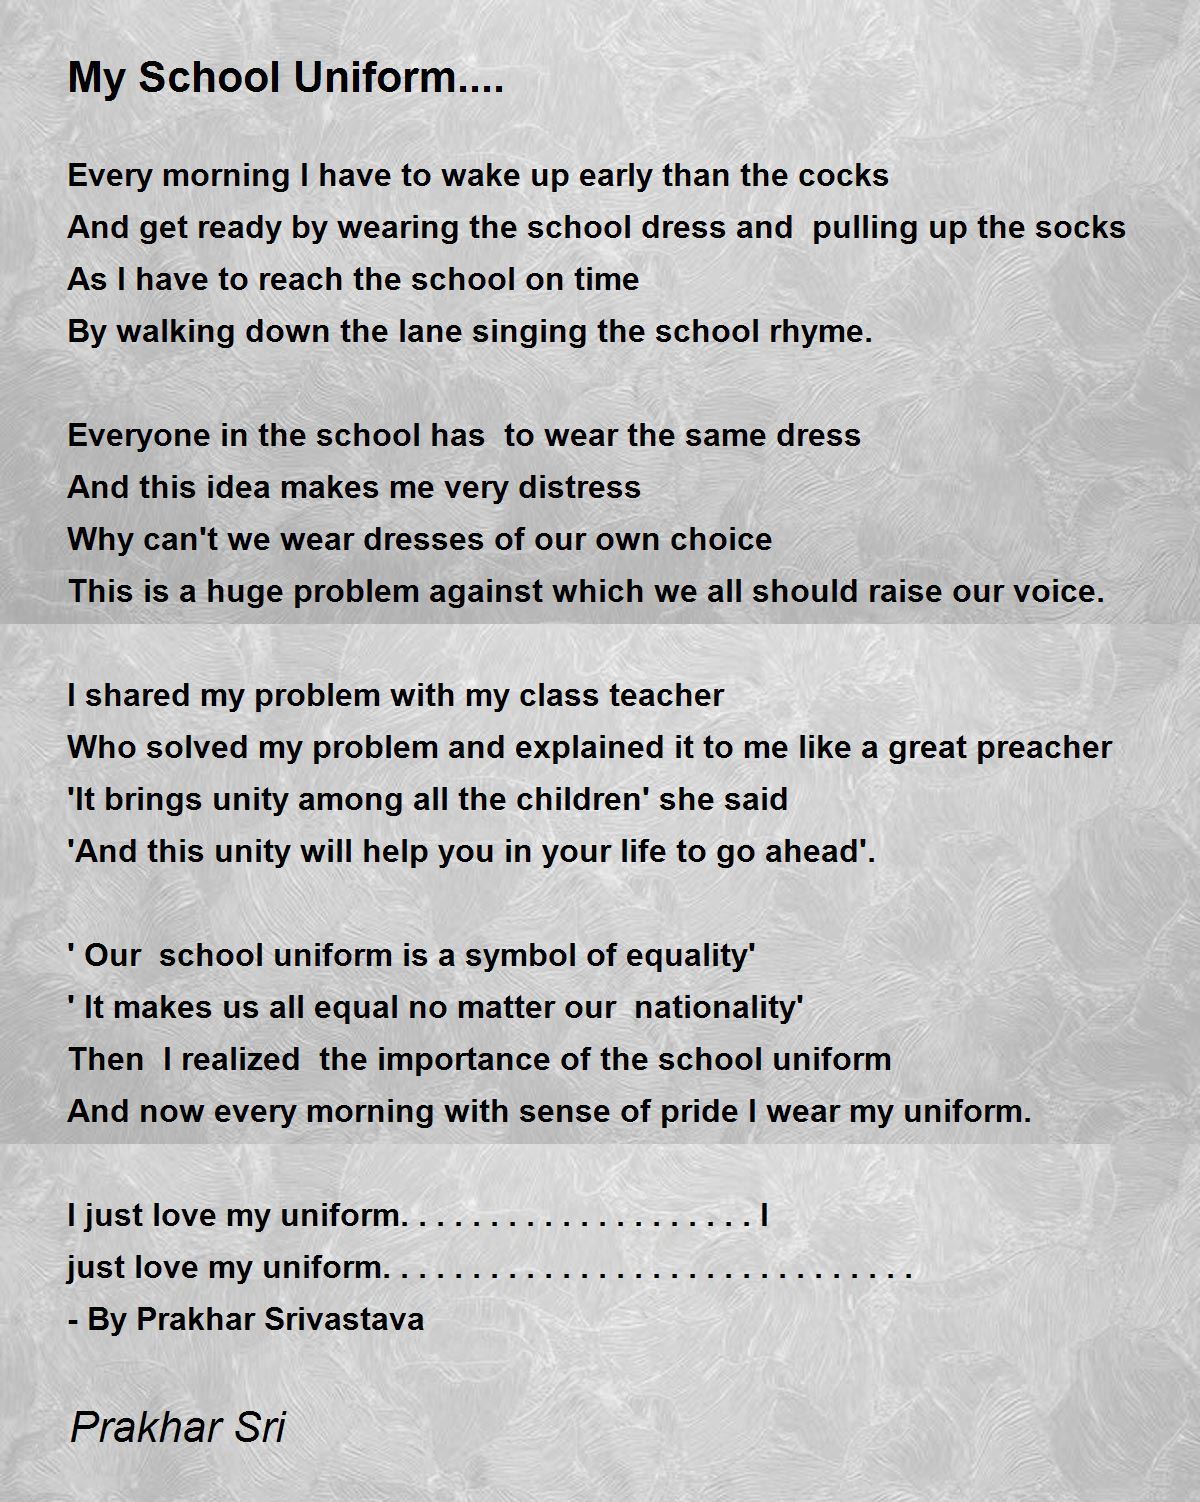 My School Uniform.... - My School Uniform.... Poem by Prakhar Sri